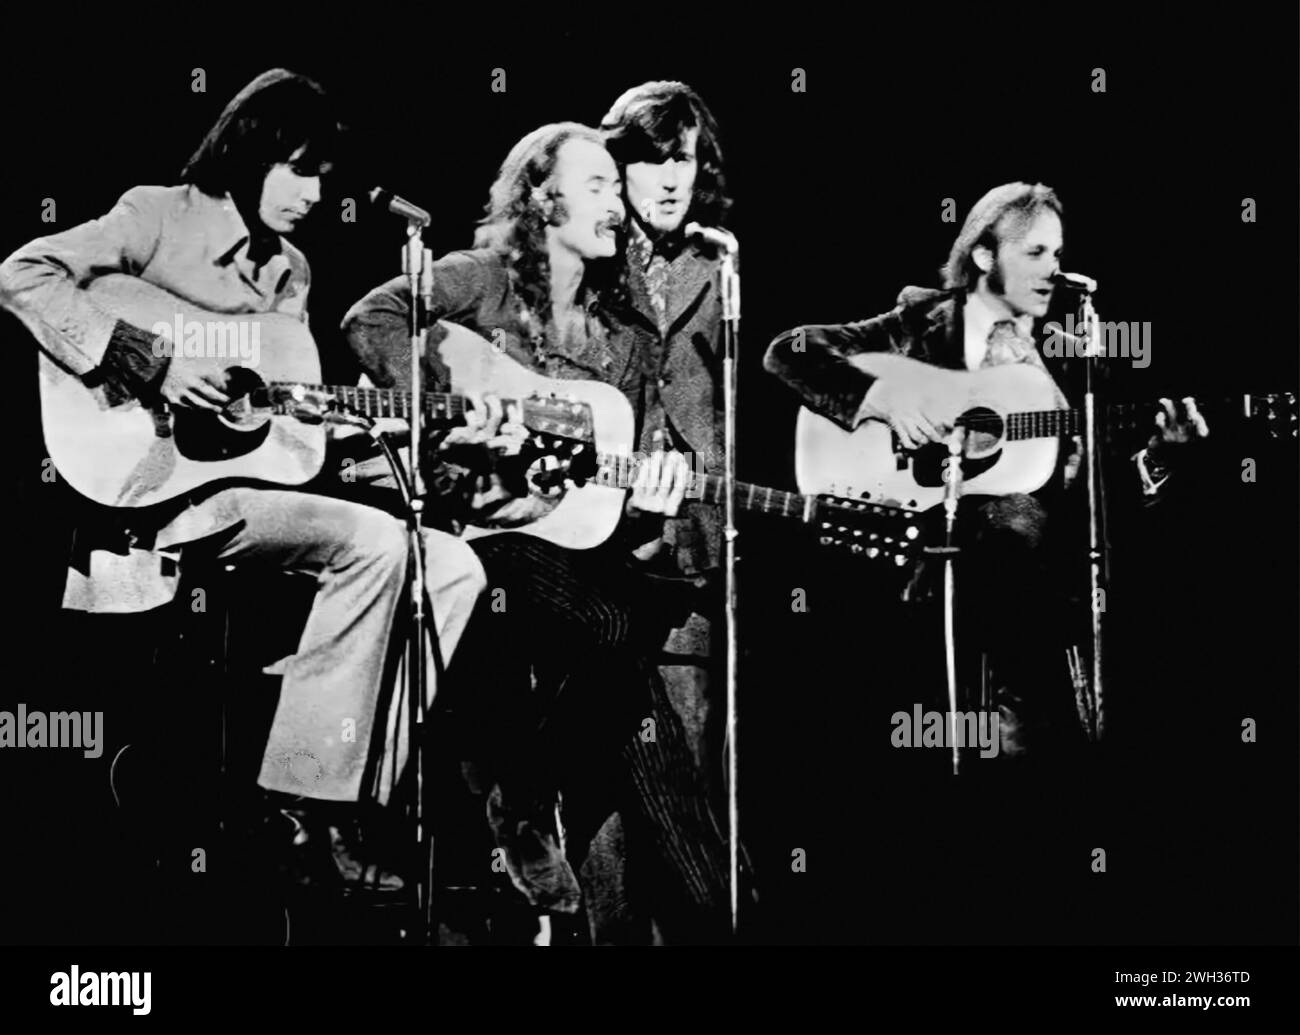 Crosby, Stills, Nash e Young. Fotografia della rock band americana nel 1970. Da sinistra a destra: Neil Young, David Crosby, Graham Nash e Stephen Stills Foto Stock